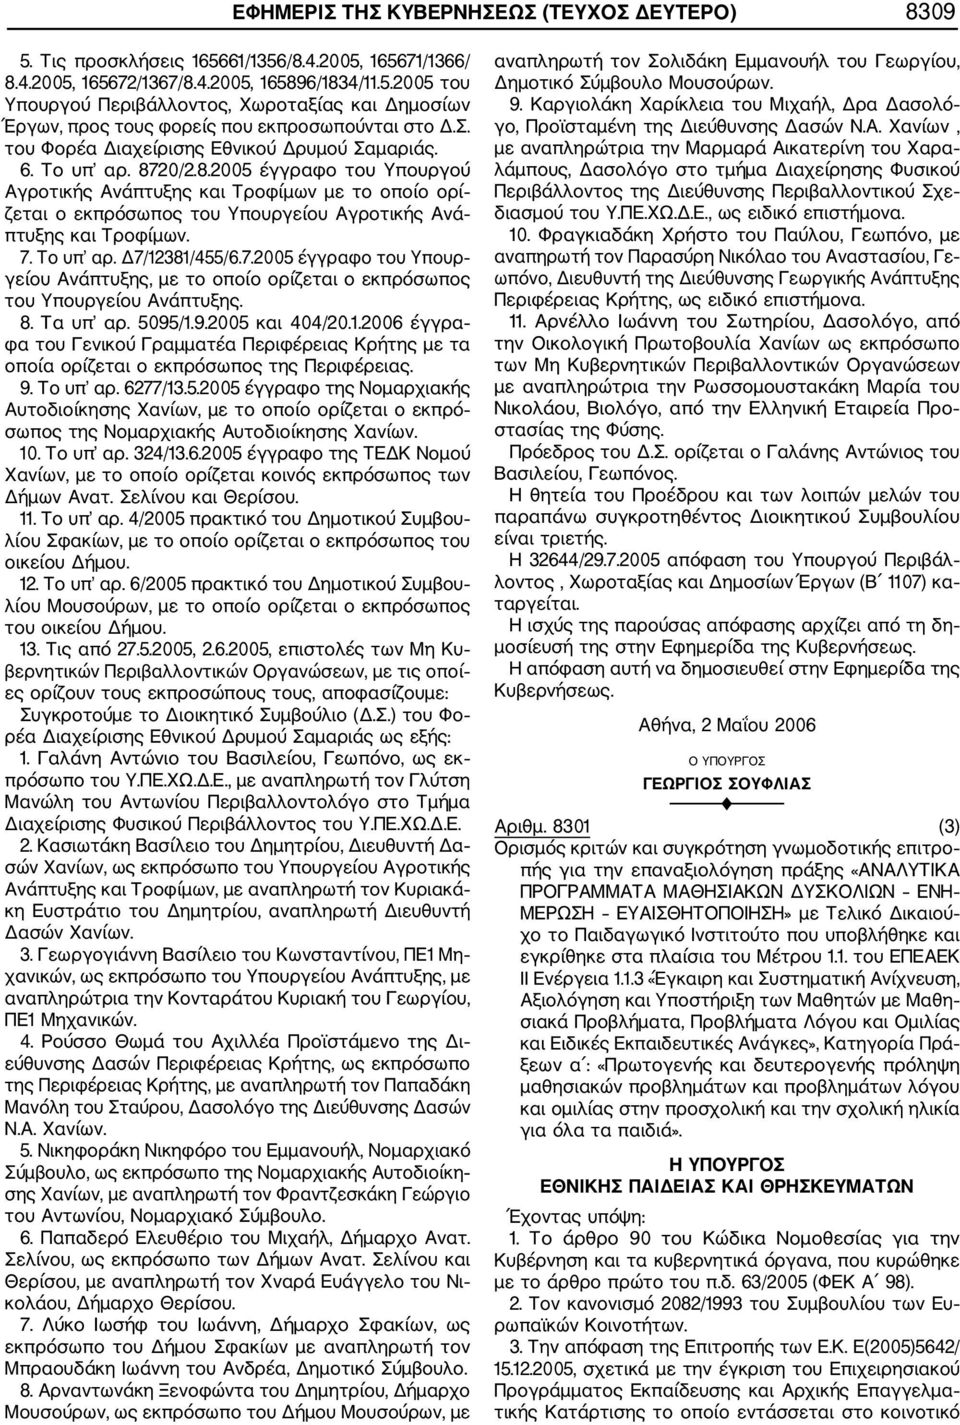 20/2.8.2005 έγγραφο του Υπουργού Αγροτικής Ανάπτυξης και Τροφίμων με το οποίο ορί ζεται ο εκπρόσωπος του Υπουργείου Αγροτικής Ανά πτυξης και Τροφίμων. 7.